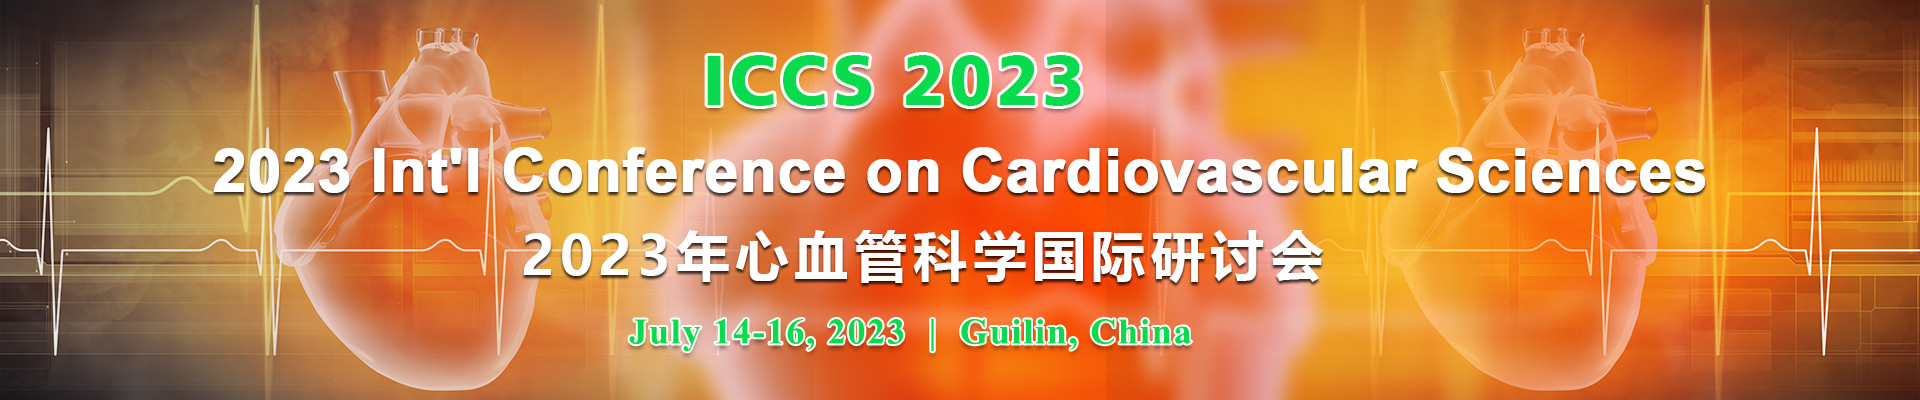 2023年心血管科学国际研讨会 (ICCS 2023) 